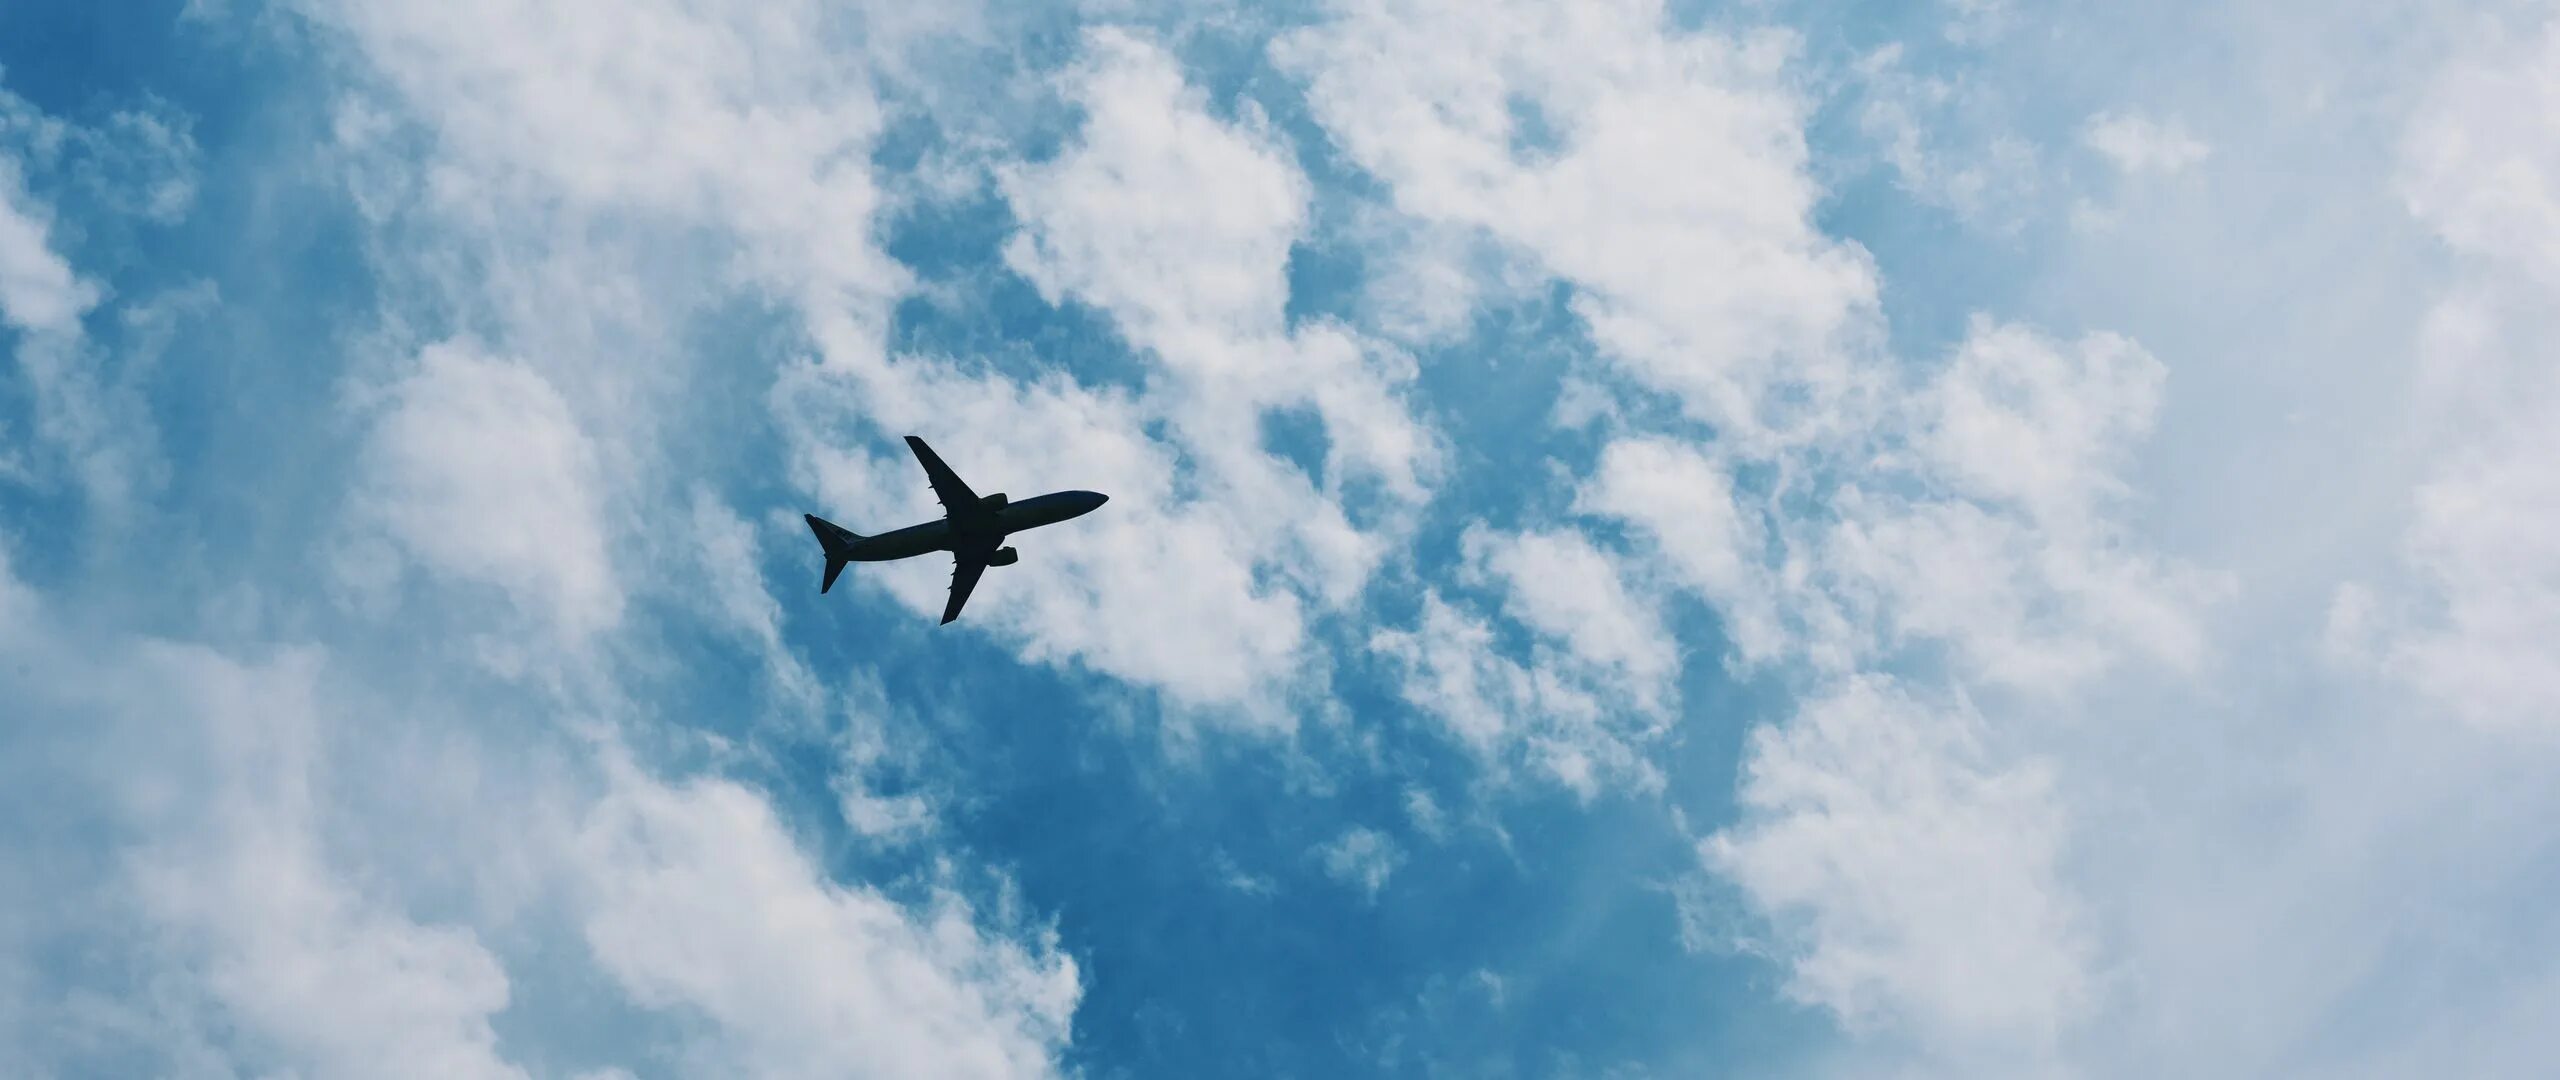 Cfvjktn DF yt,t. Самолет на фоне неба. Небо с самолетом вдалеке.